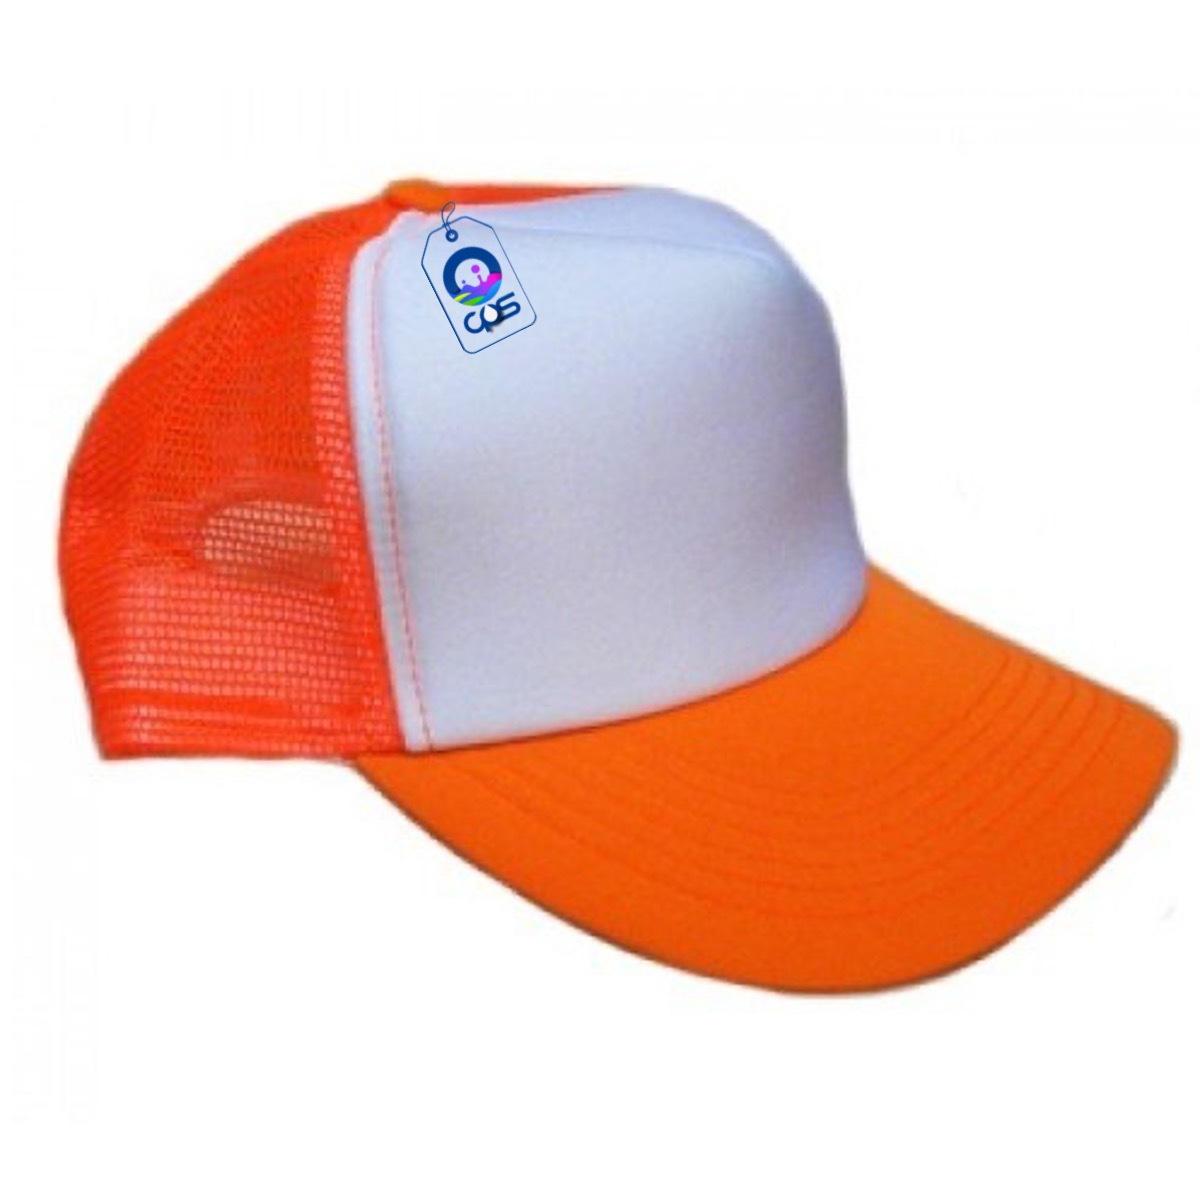 Prensa de calor para gorras - 2 Años de Garantía - Color Make™